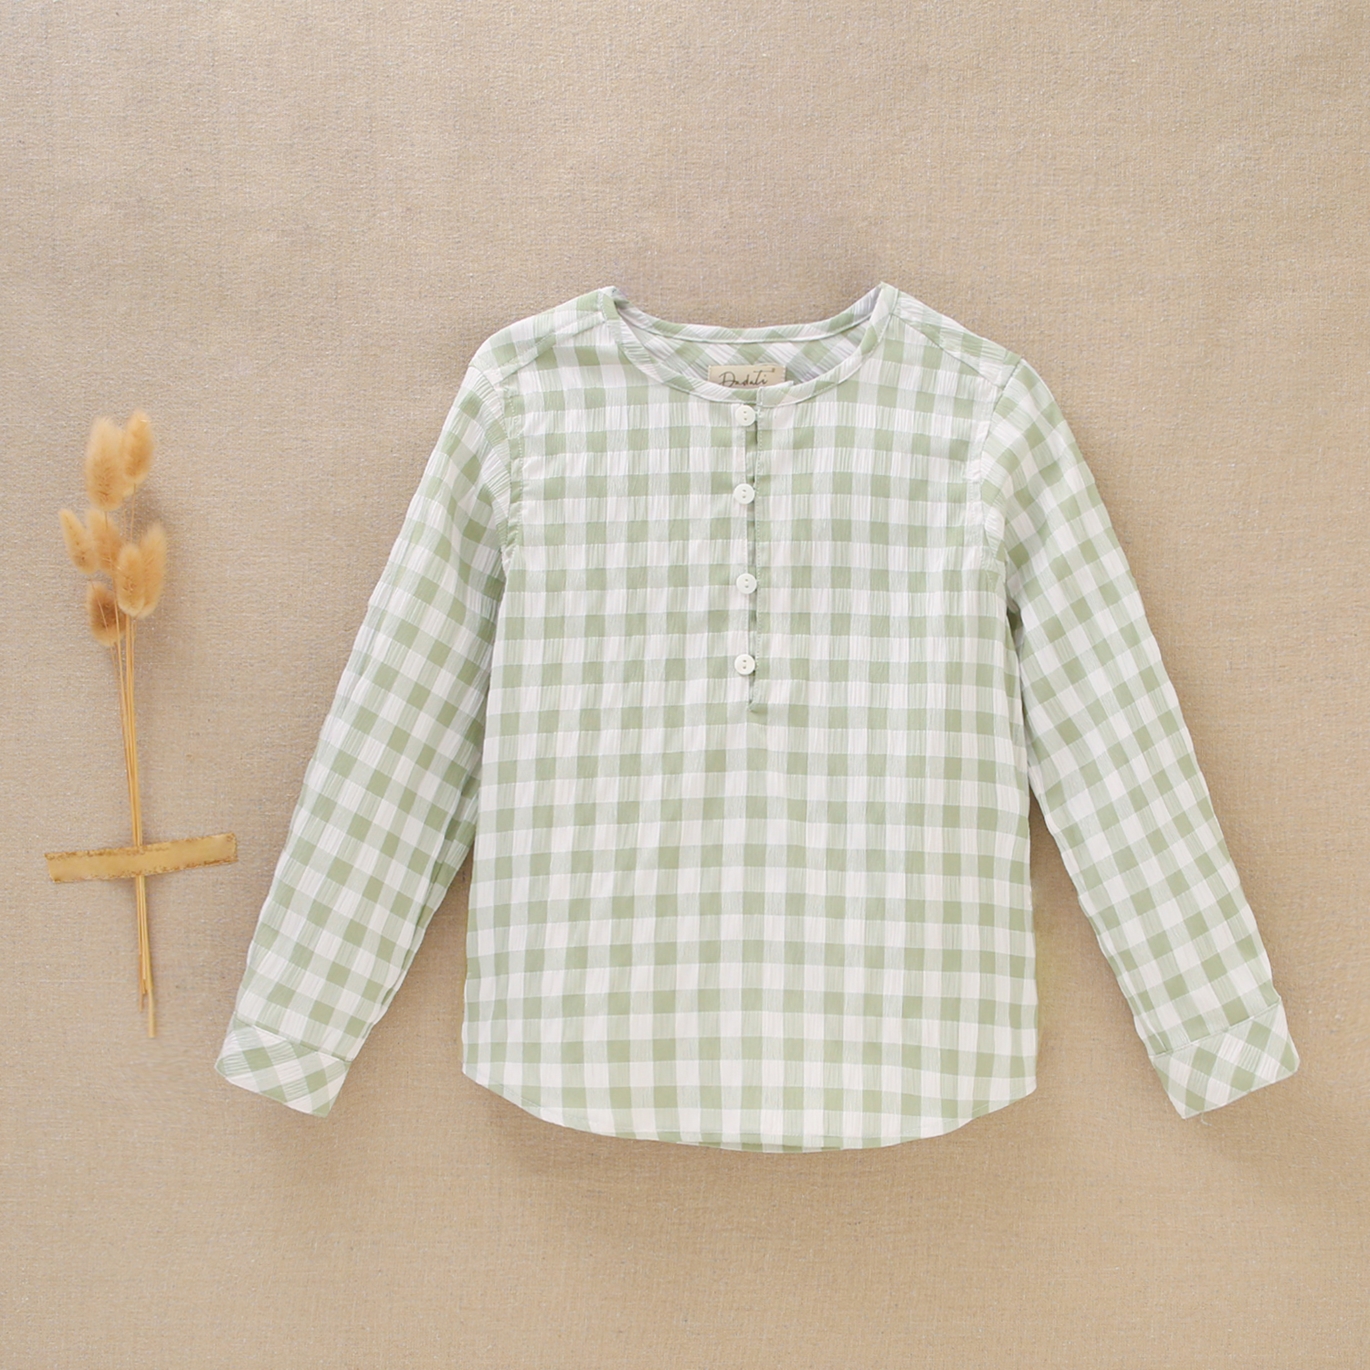 Imagen de Camisa de niño en cuadros verdes y blancos